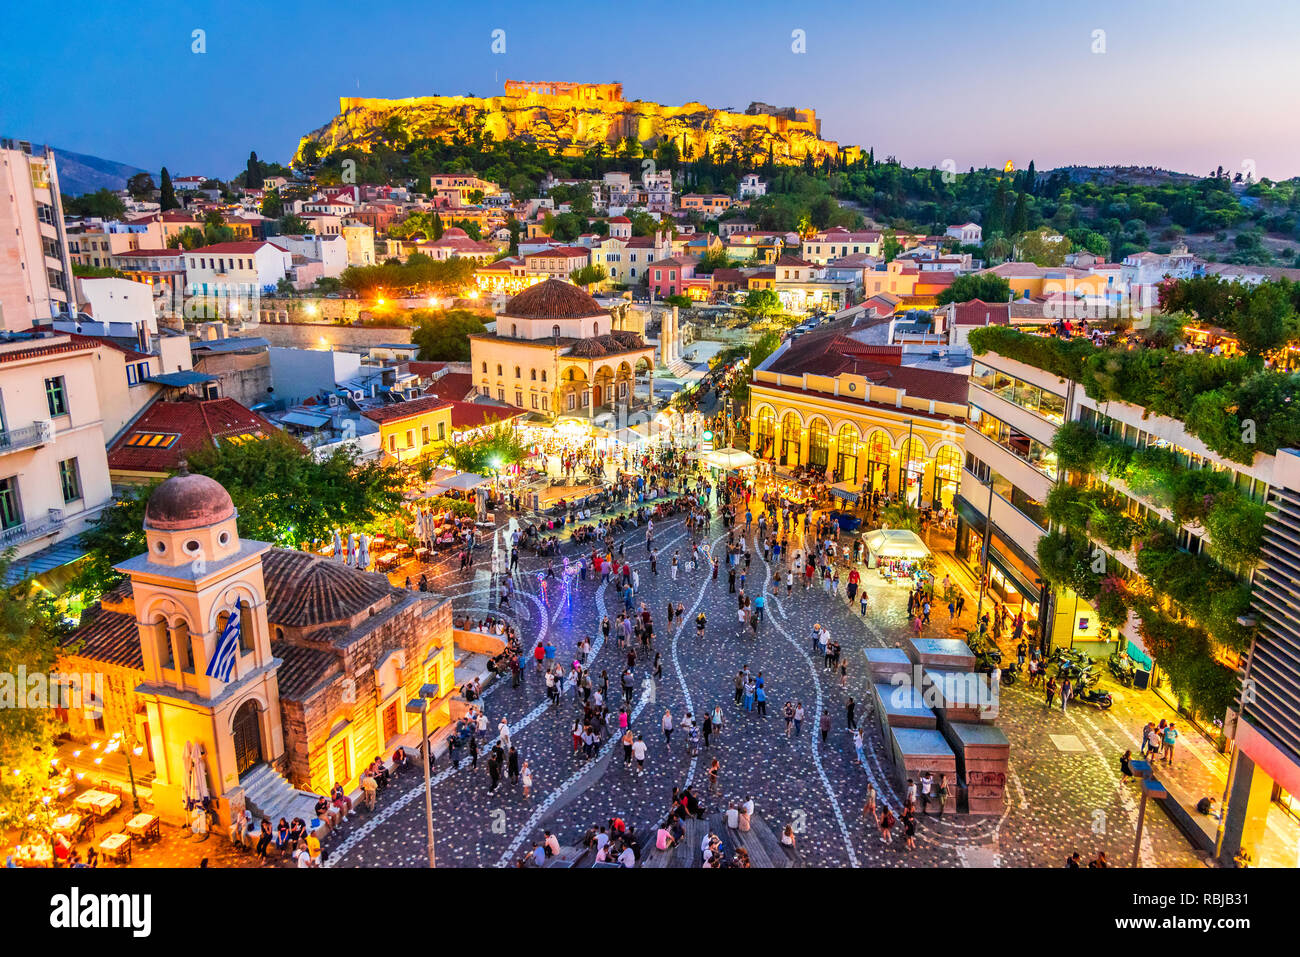 Athènes, Grèce - Athènes de nuit avec l'image ci-dessus, la place Monastiraki et l'ancienne acropole. Banque D'Images